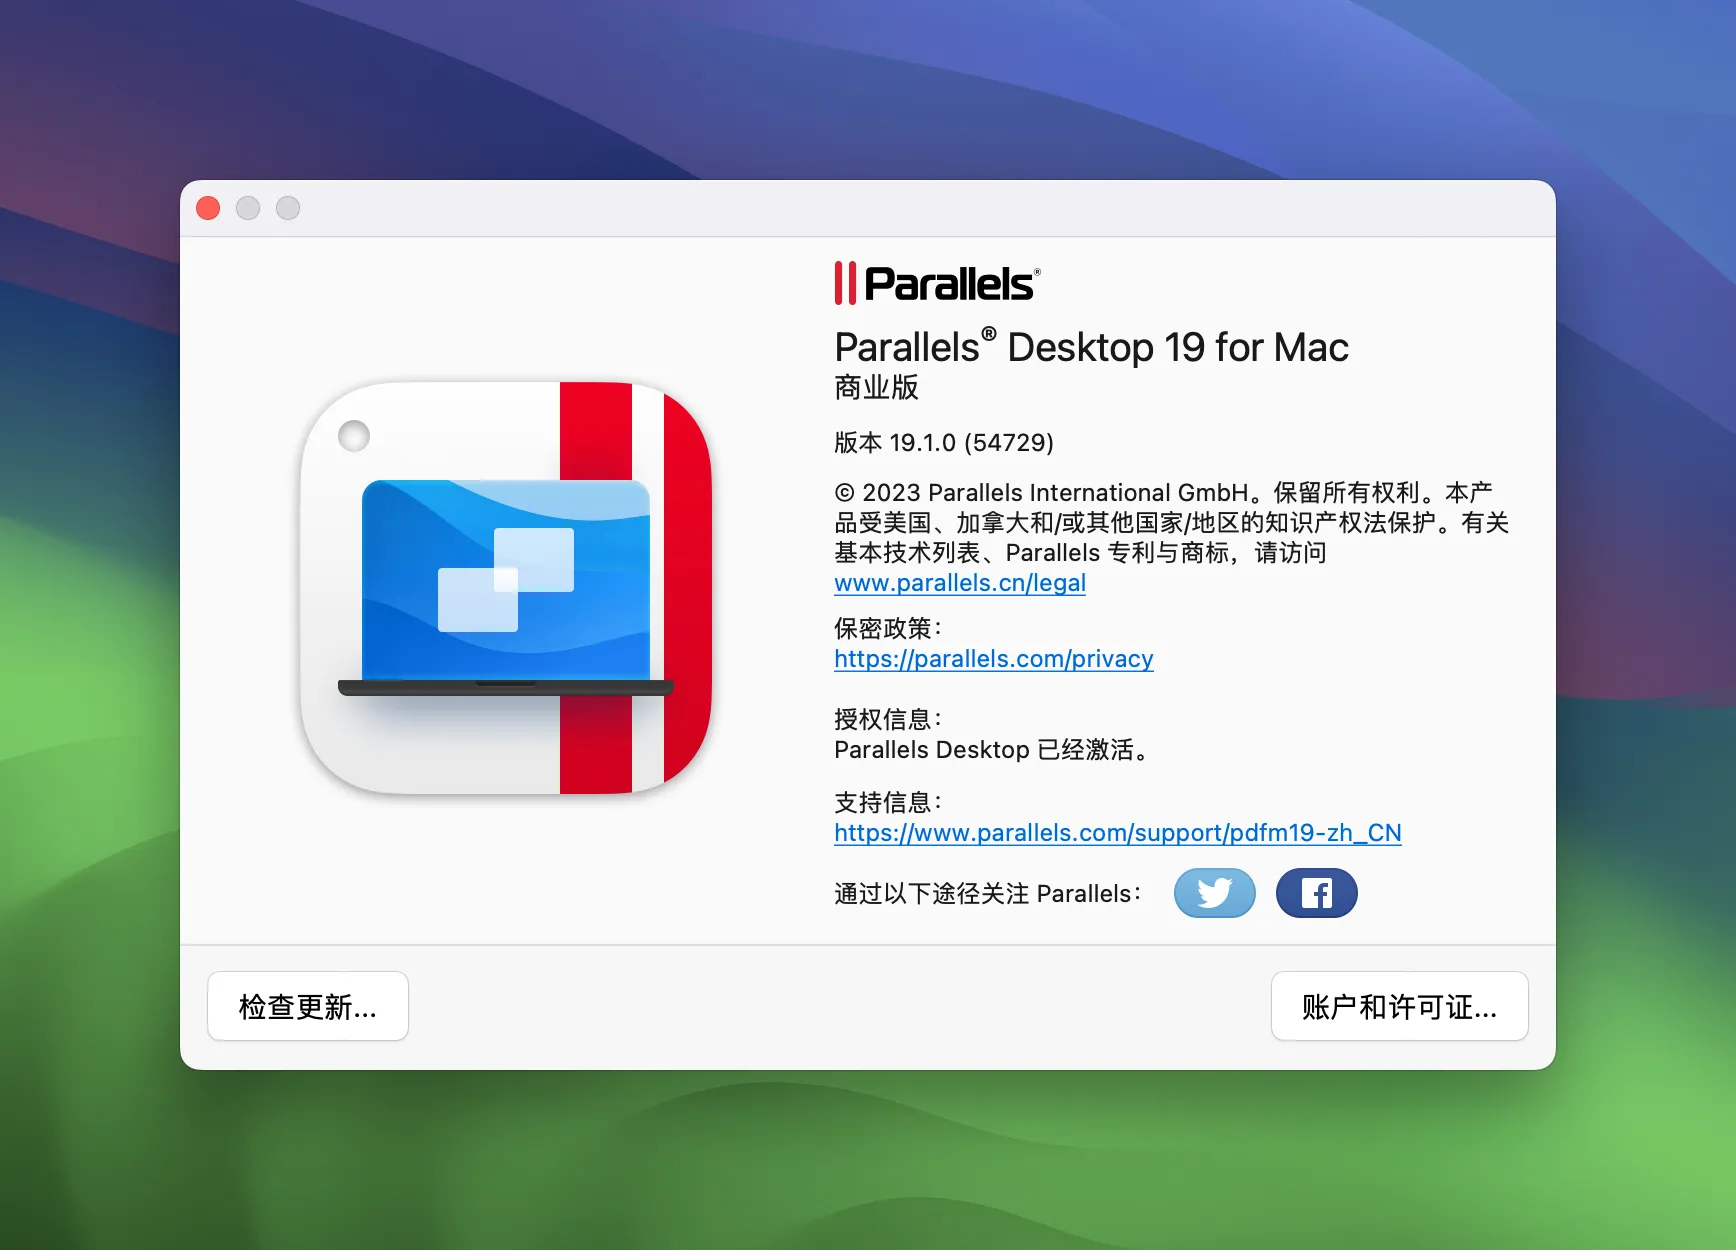 Parallels Desktop 19.1.1-54734 破解版 - PD虚拟机激活工具/破解补丁/非启动器 | 系统增强